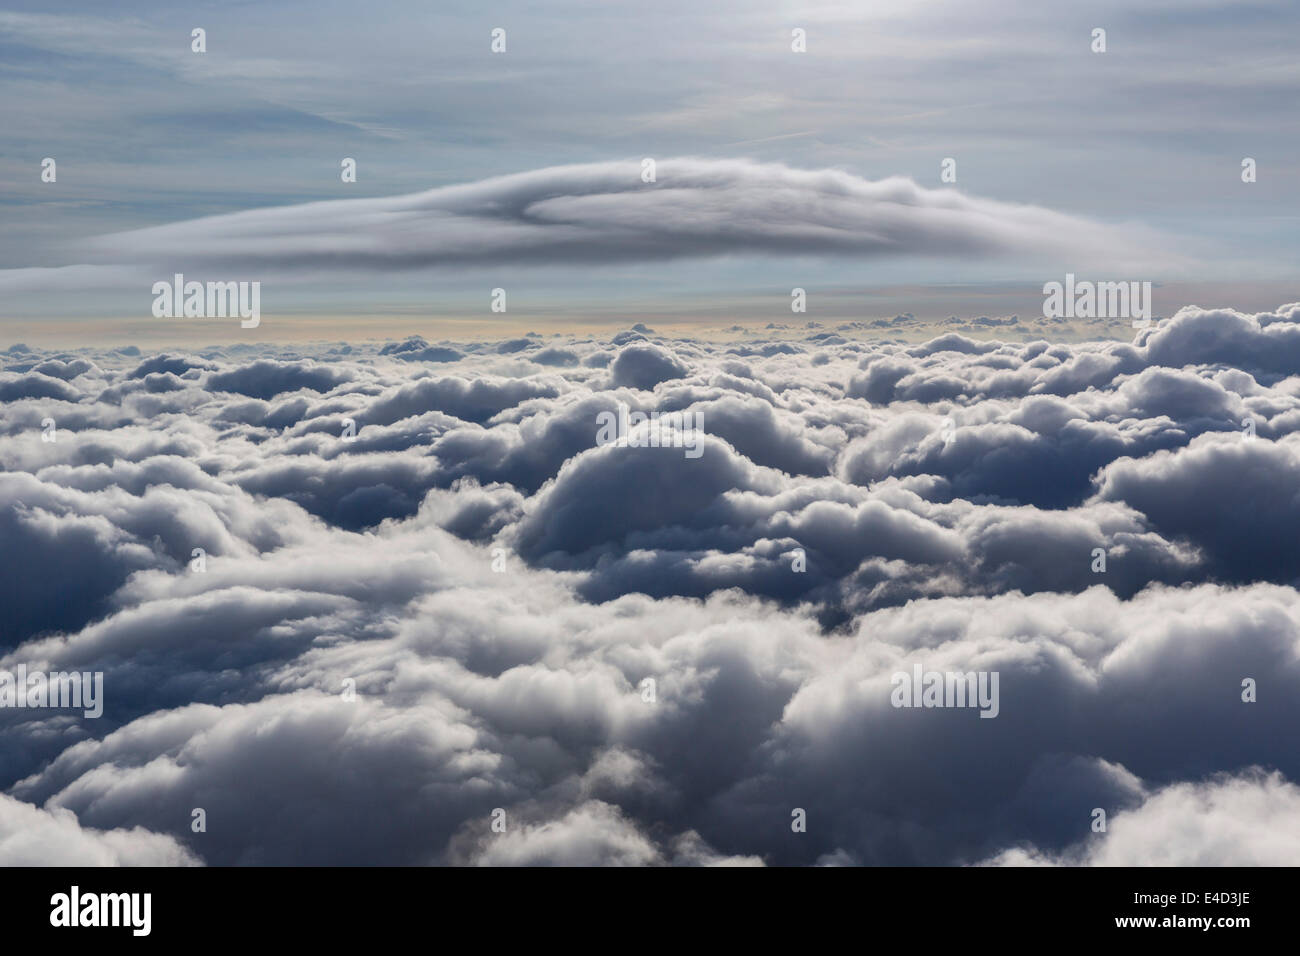 Nube lenticular, Cumulus lenticularis, por encima de la capa superior de nubes, Renania del Norte-Westfalia, Alemania Foto de stock